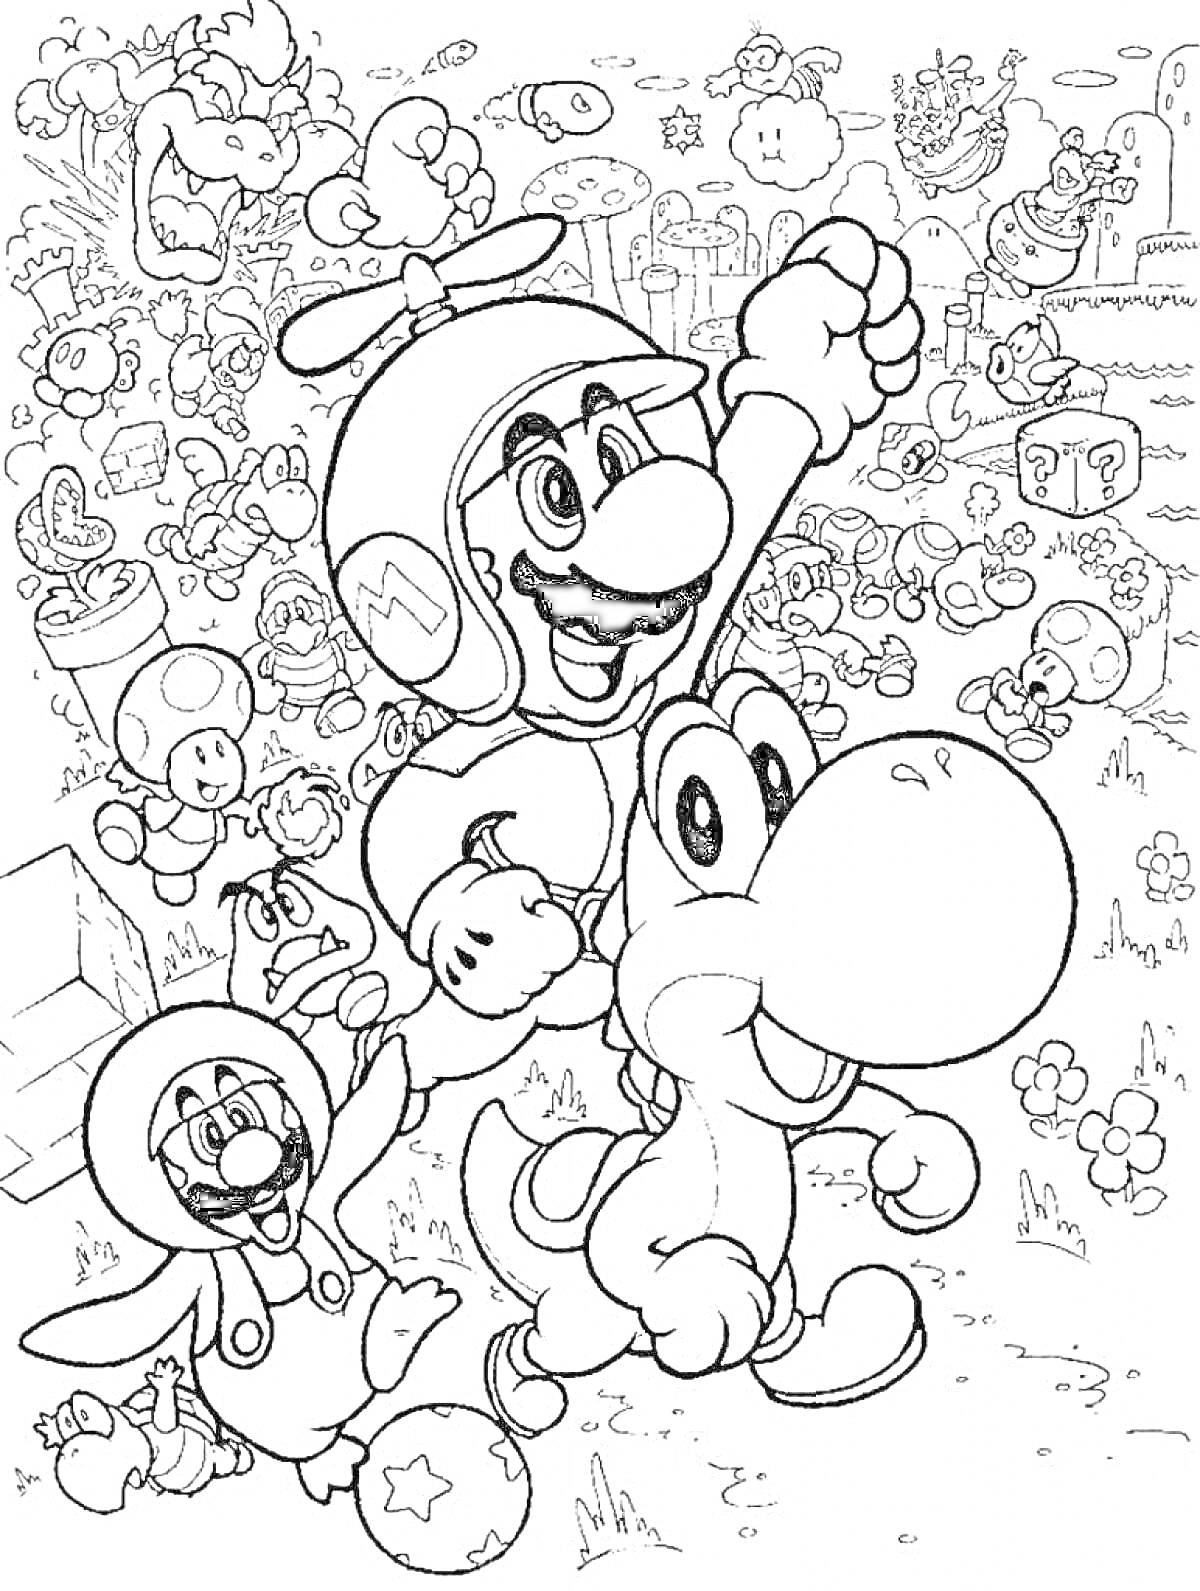 Раскраска Марио, Луиджи и Йоши в приключении в мире Марио, с различными персонажами и элементами, такими как блоки, цветы и облака